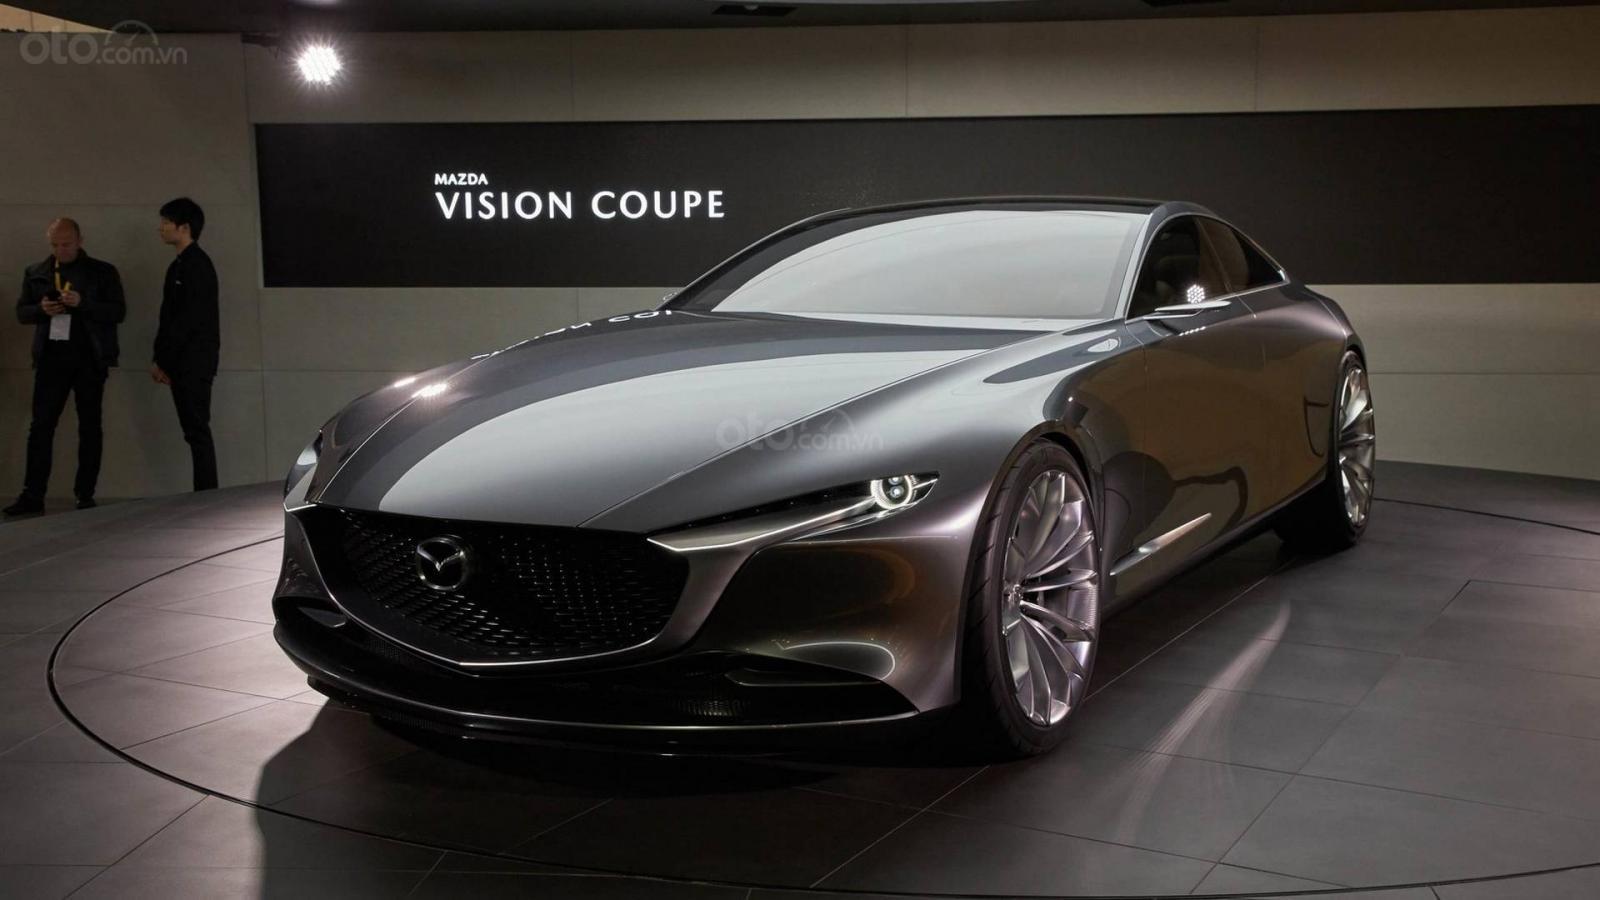 Xe Mazda mới sẽ có động cơ I6 cùng dẫn động cầu sau, dự kiến tăng giá